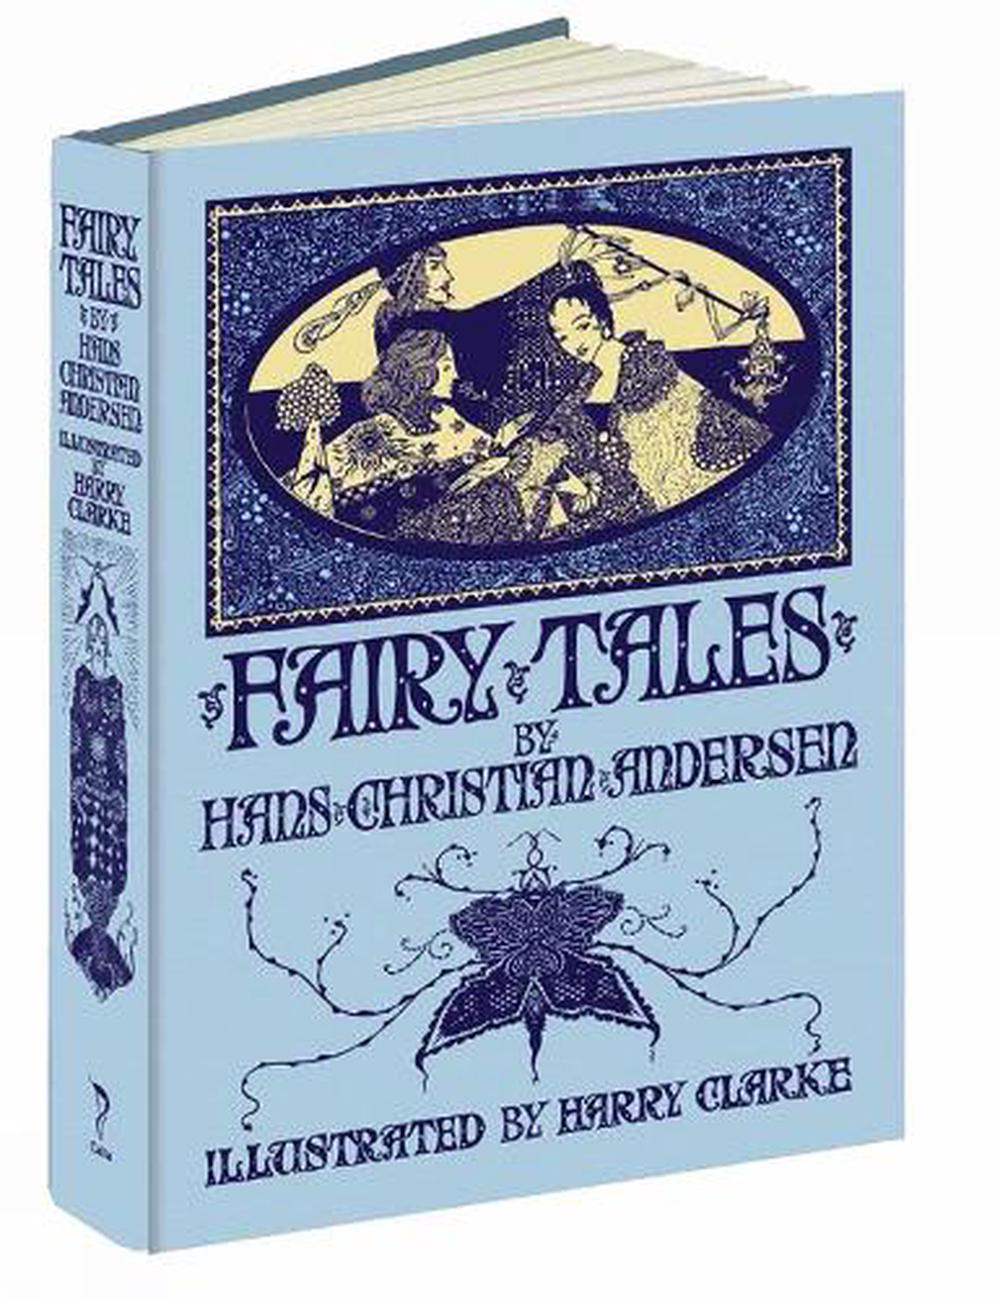 Fairy Tales by Hans Christian Andersen by Harry Clarke